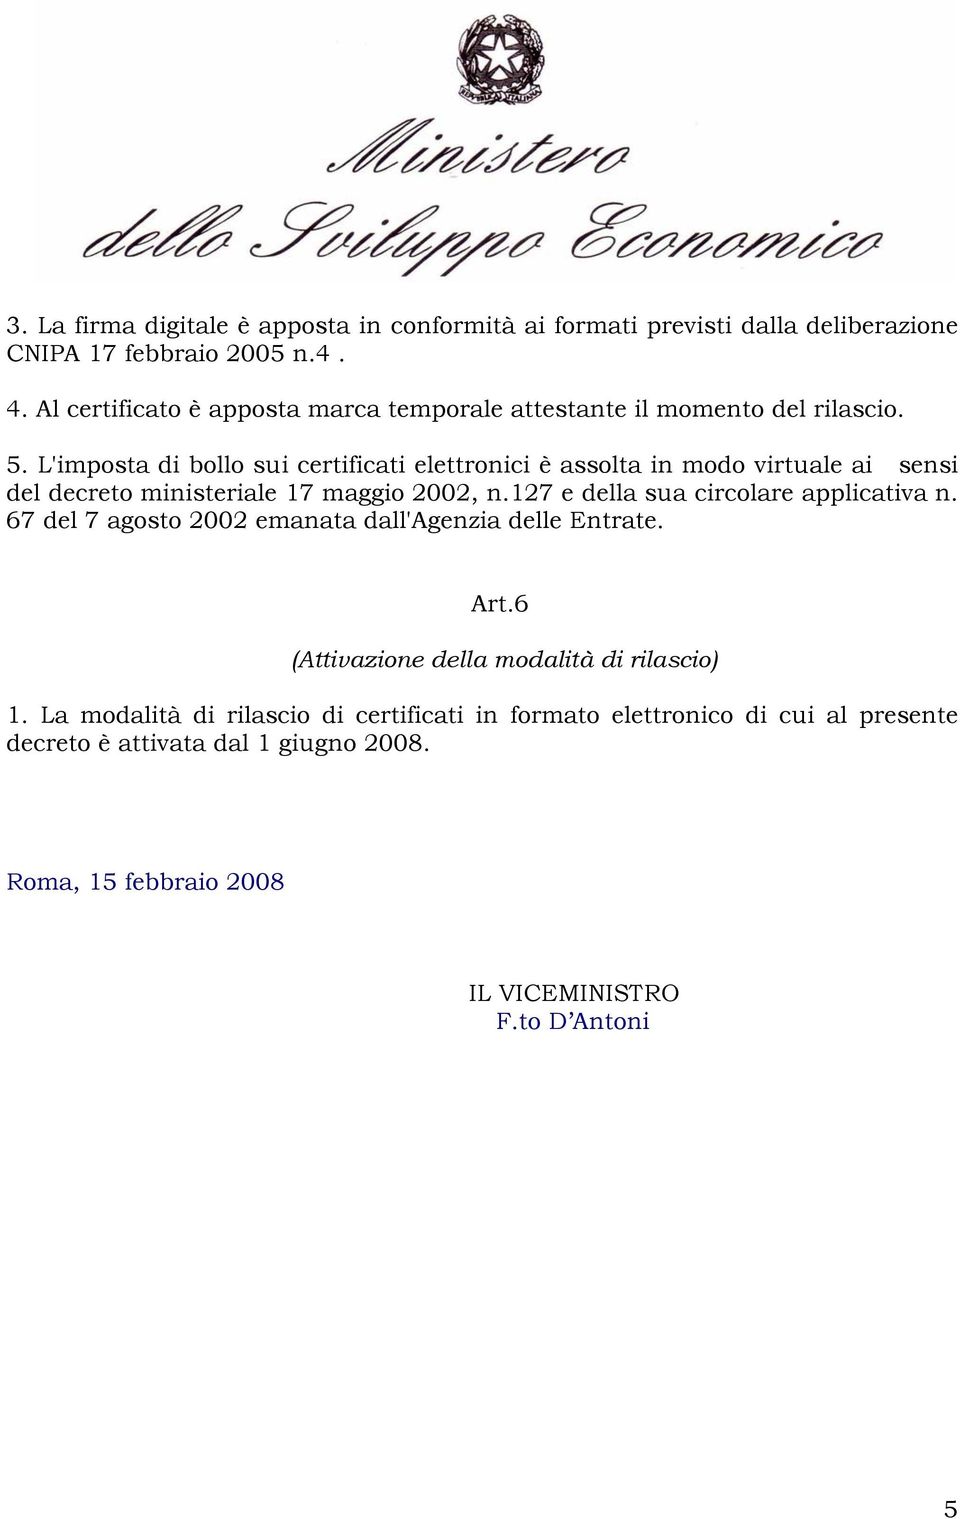 L'imposta di bollo sui certificati elettronici è assolta in modo virtuale ai sensi del decreto ministeriale 17 maggio 2002, n.